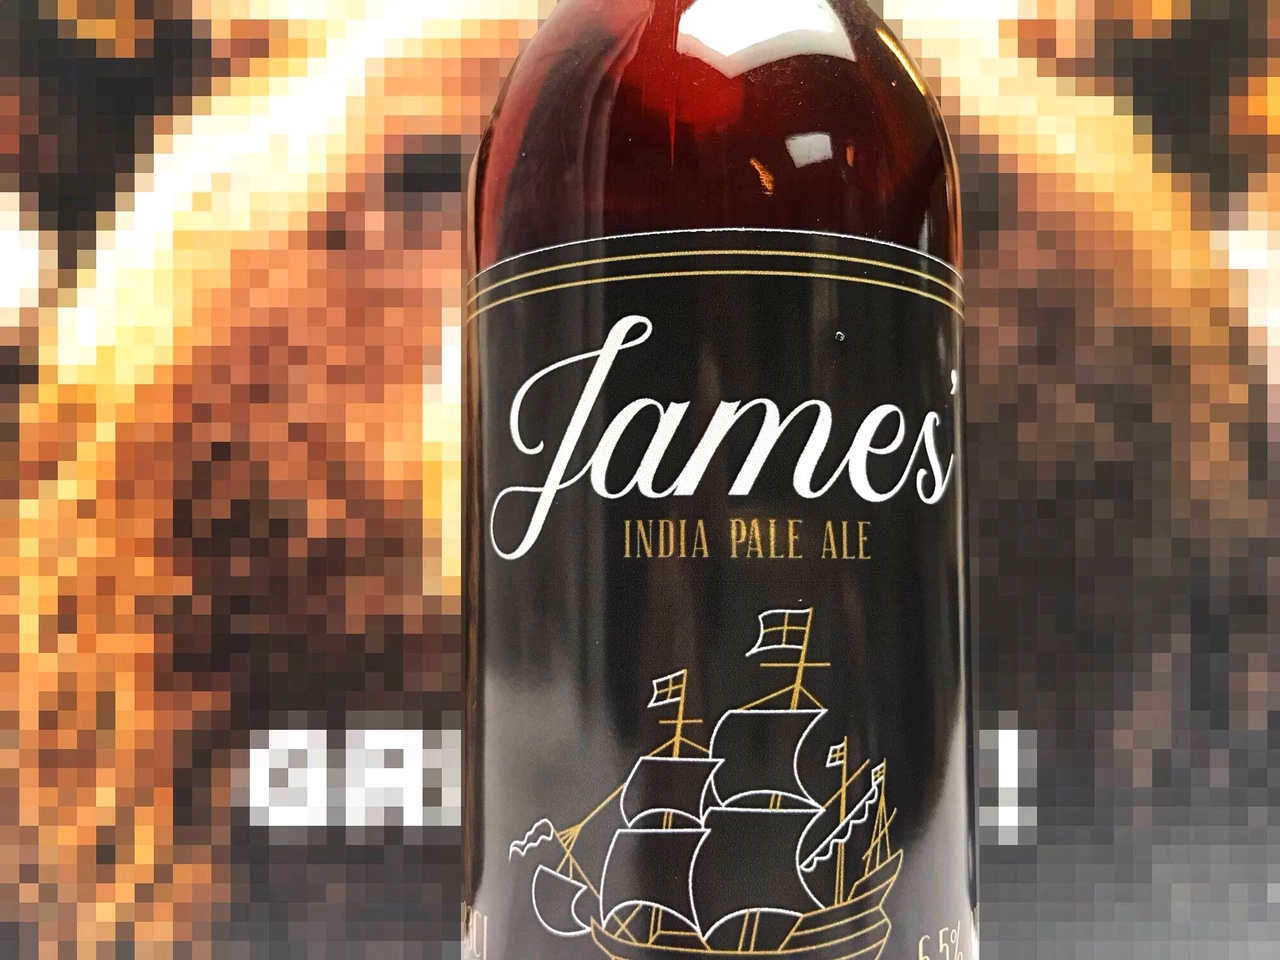 James' India Pale Ale